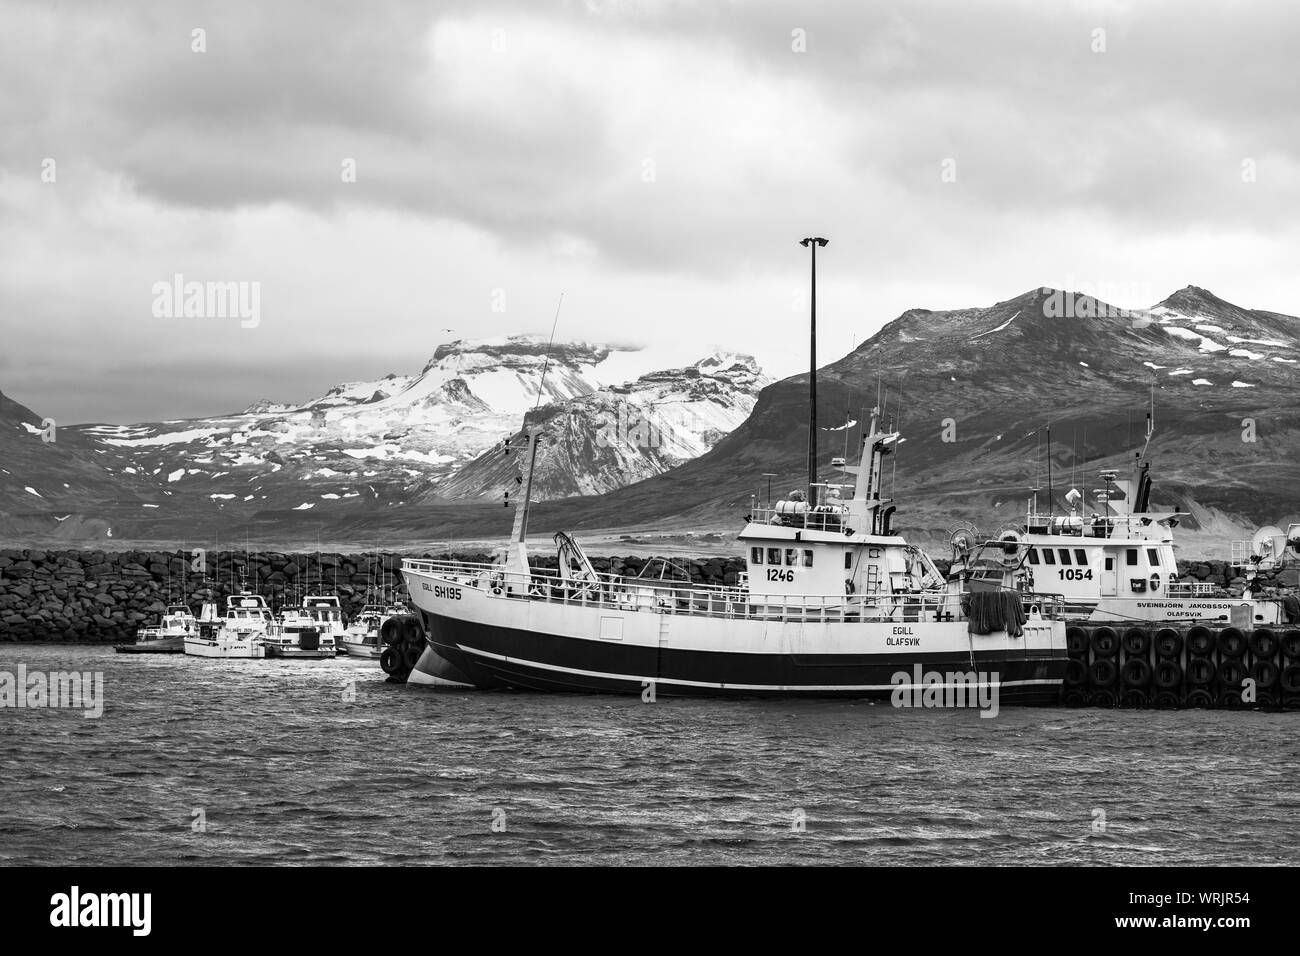 OLAFSVIK, SNAEFELLSNES PENINSULA, Islanda - barche ormeggiate in porto sulla costa. Foto Stock